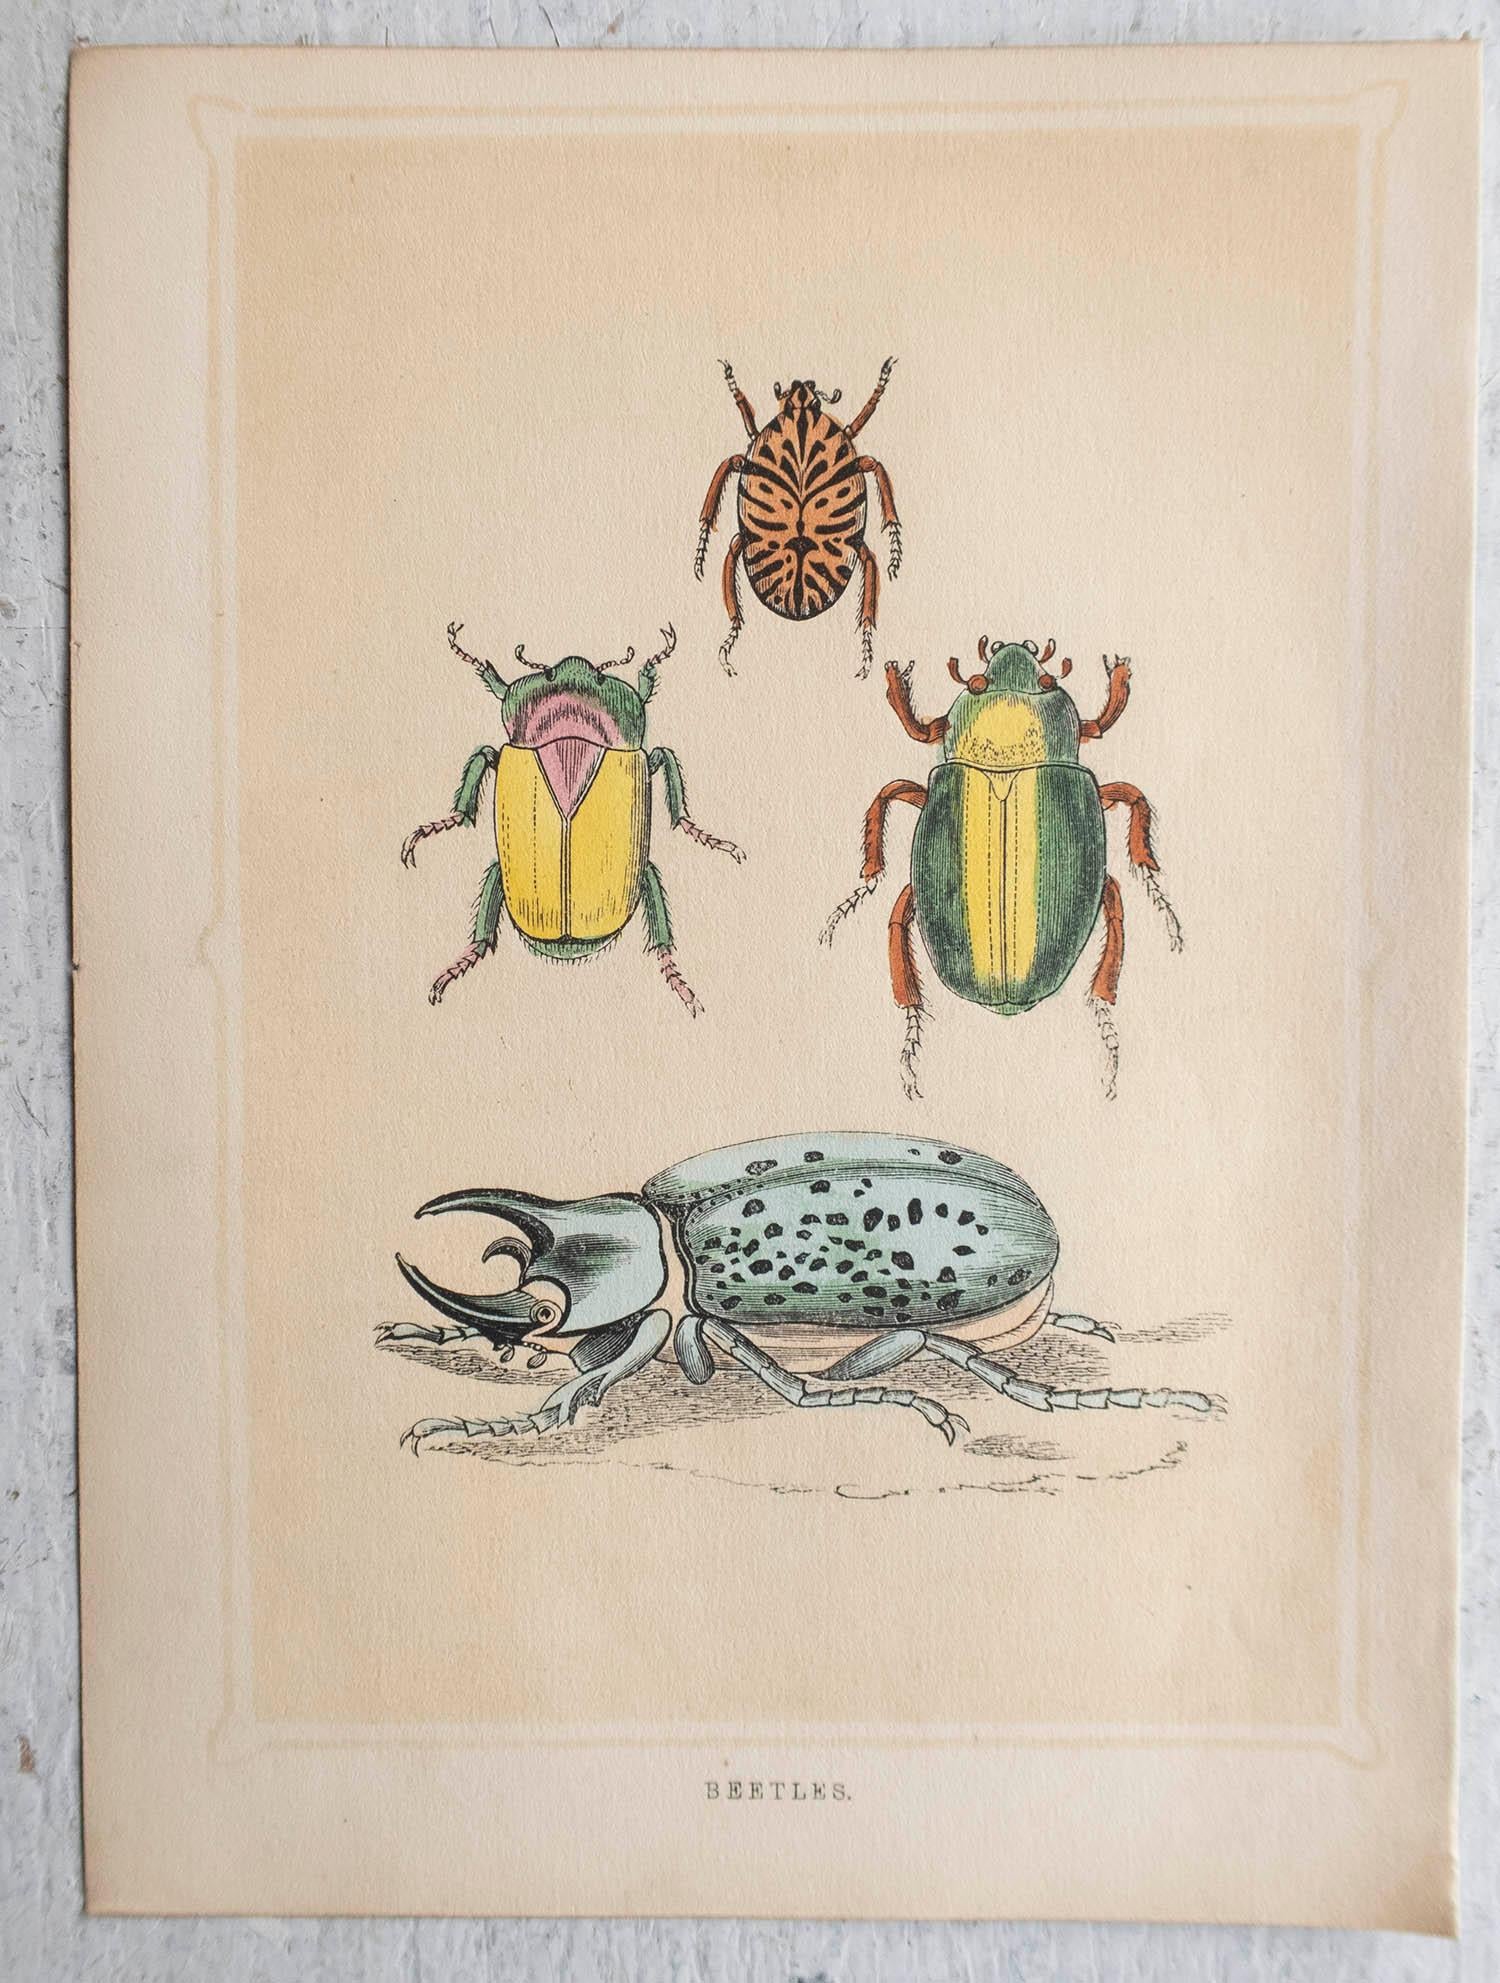  Grabado original antiguo de escarabajos, circa 1850 Inglés